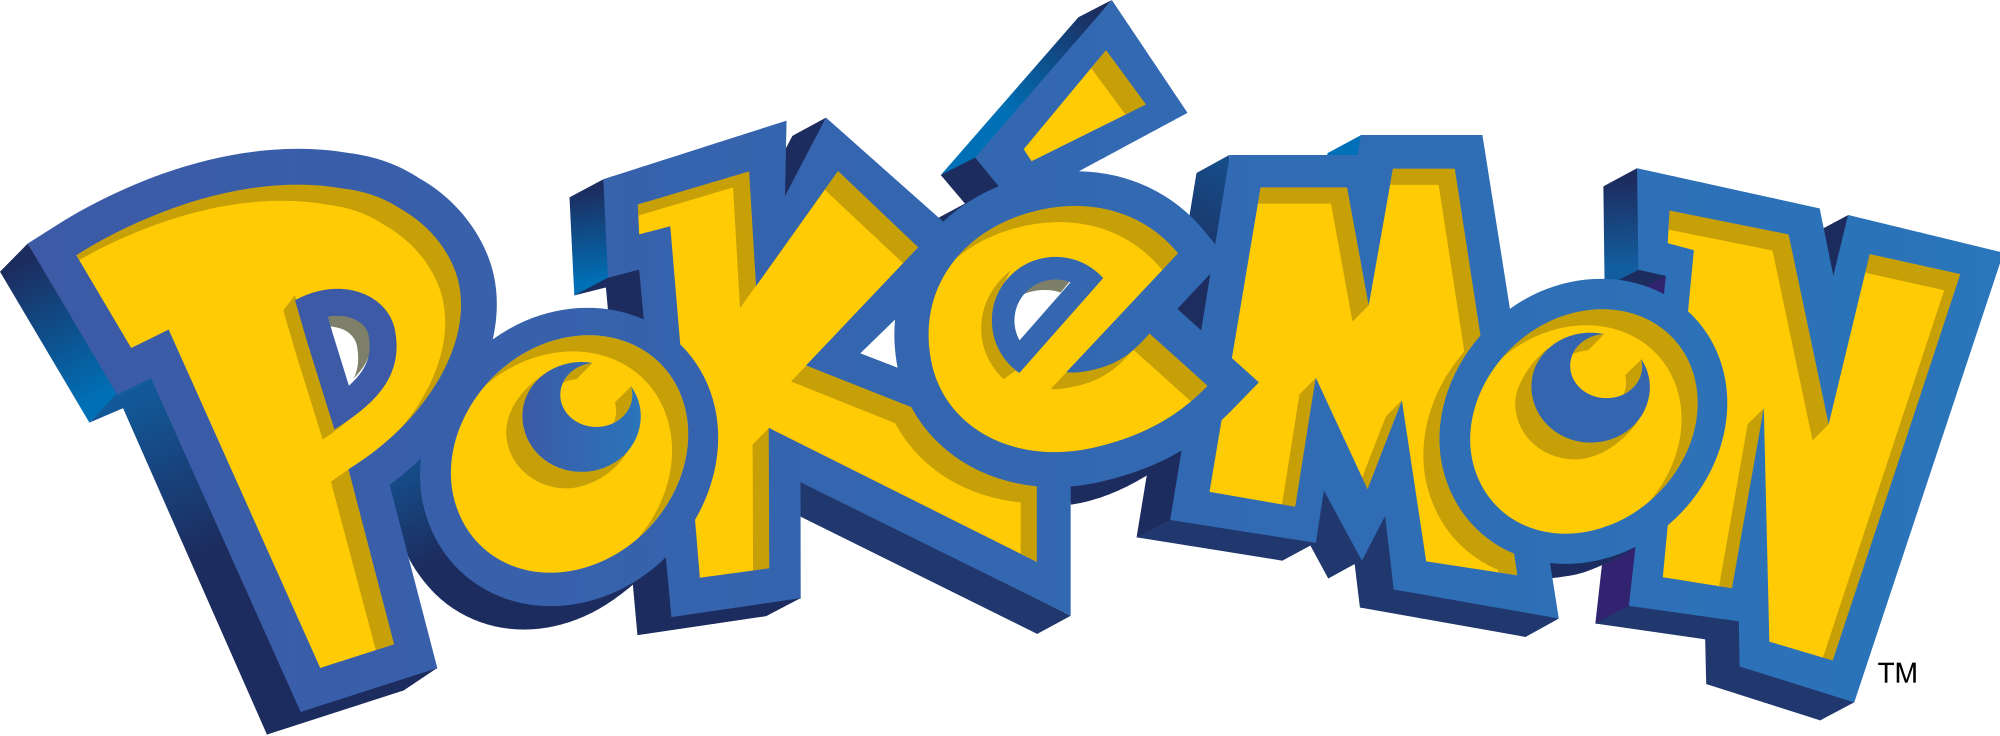 Pokémon Giallo Rosso Blu Recensione